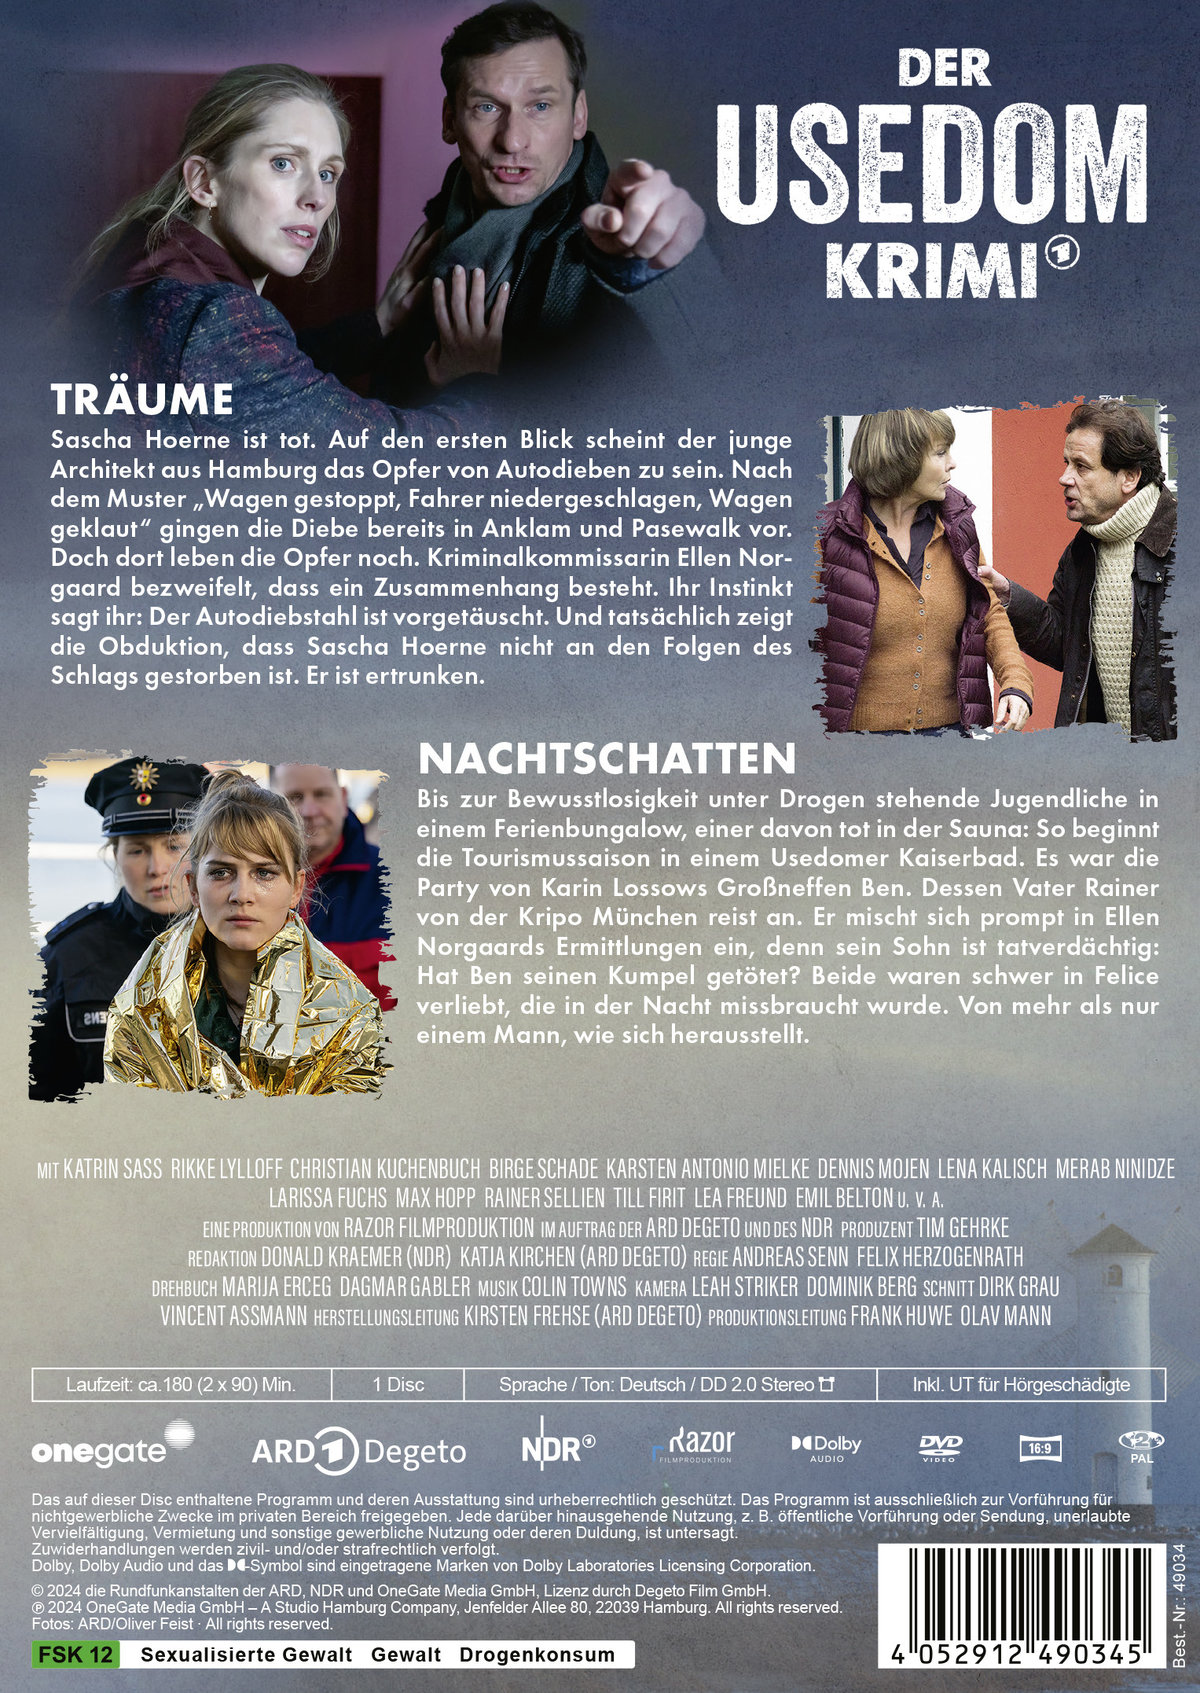 Der Usedom-Krimi: Träume / Nachtschatten  (DVD)